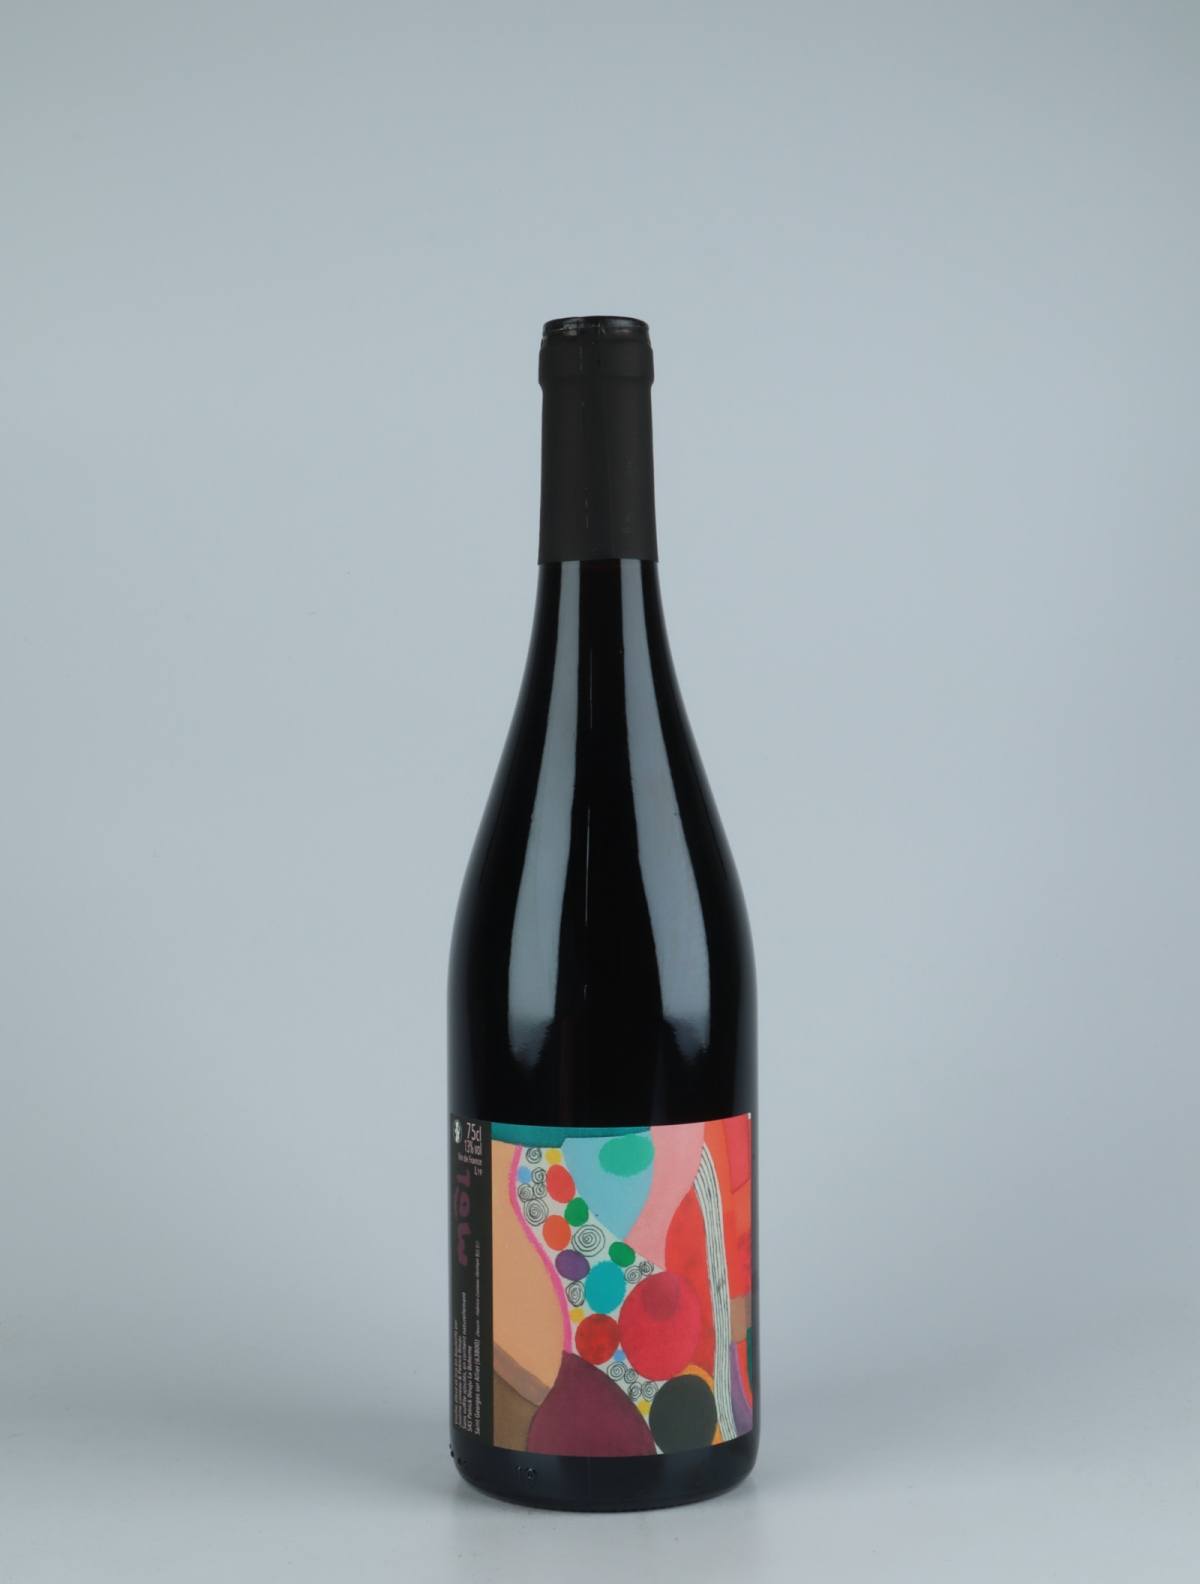 En flaske 2019 Môl Rødvin fra Patrick Bouju, Auvergne i Frankrig